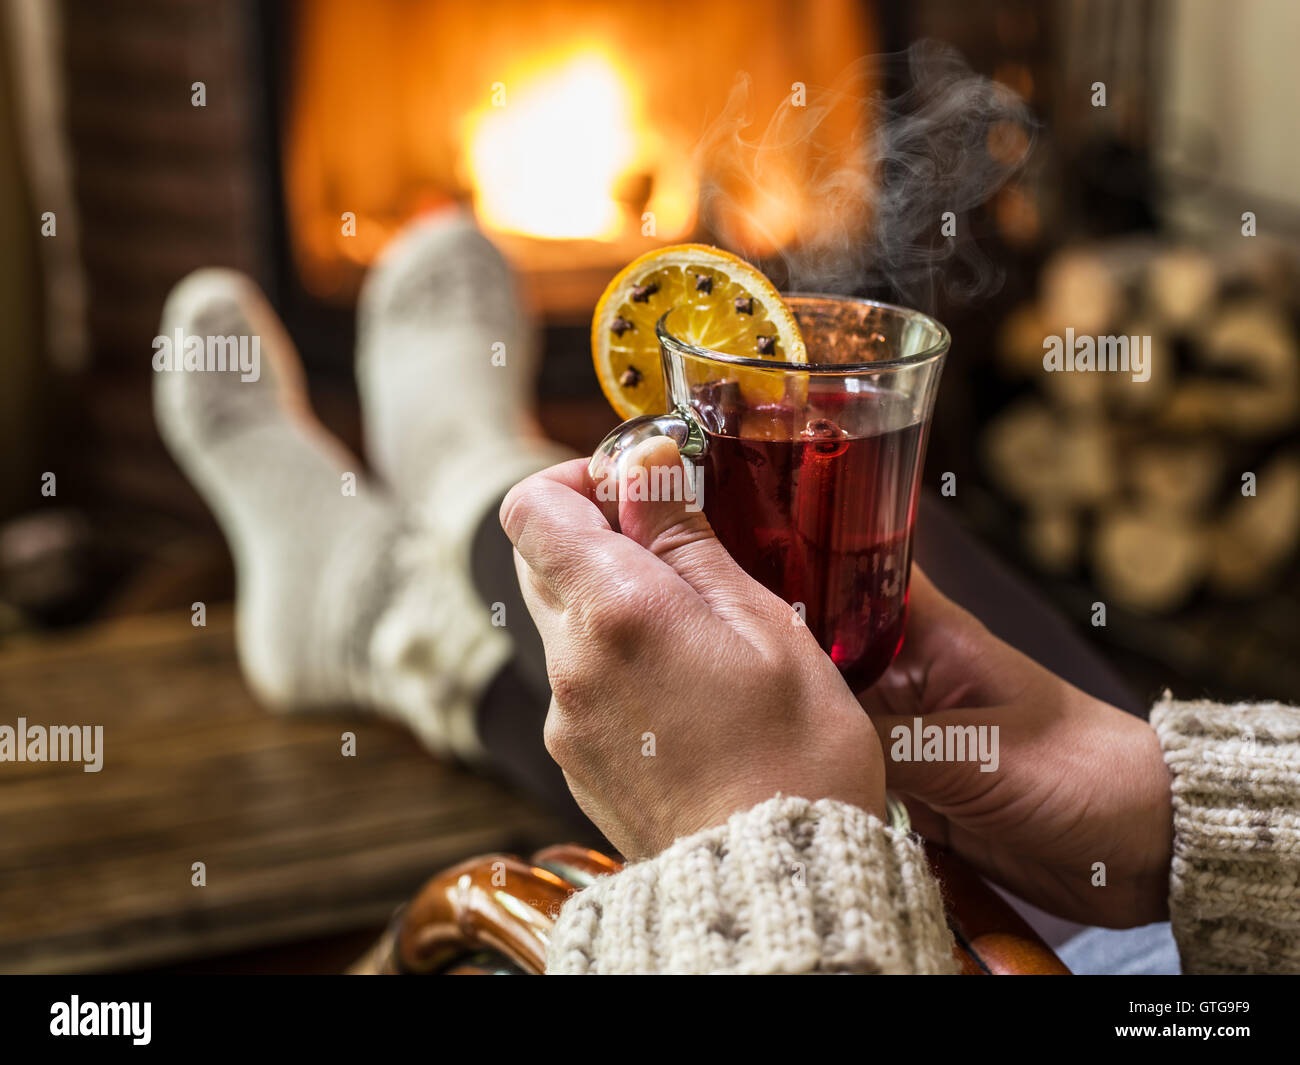 Vin brulé e prenota nelle mani della donna. Rilassarsi davanti al fuoco ardente nel freddo giorno d'inverno. Foto Stock